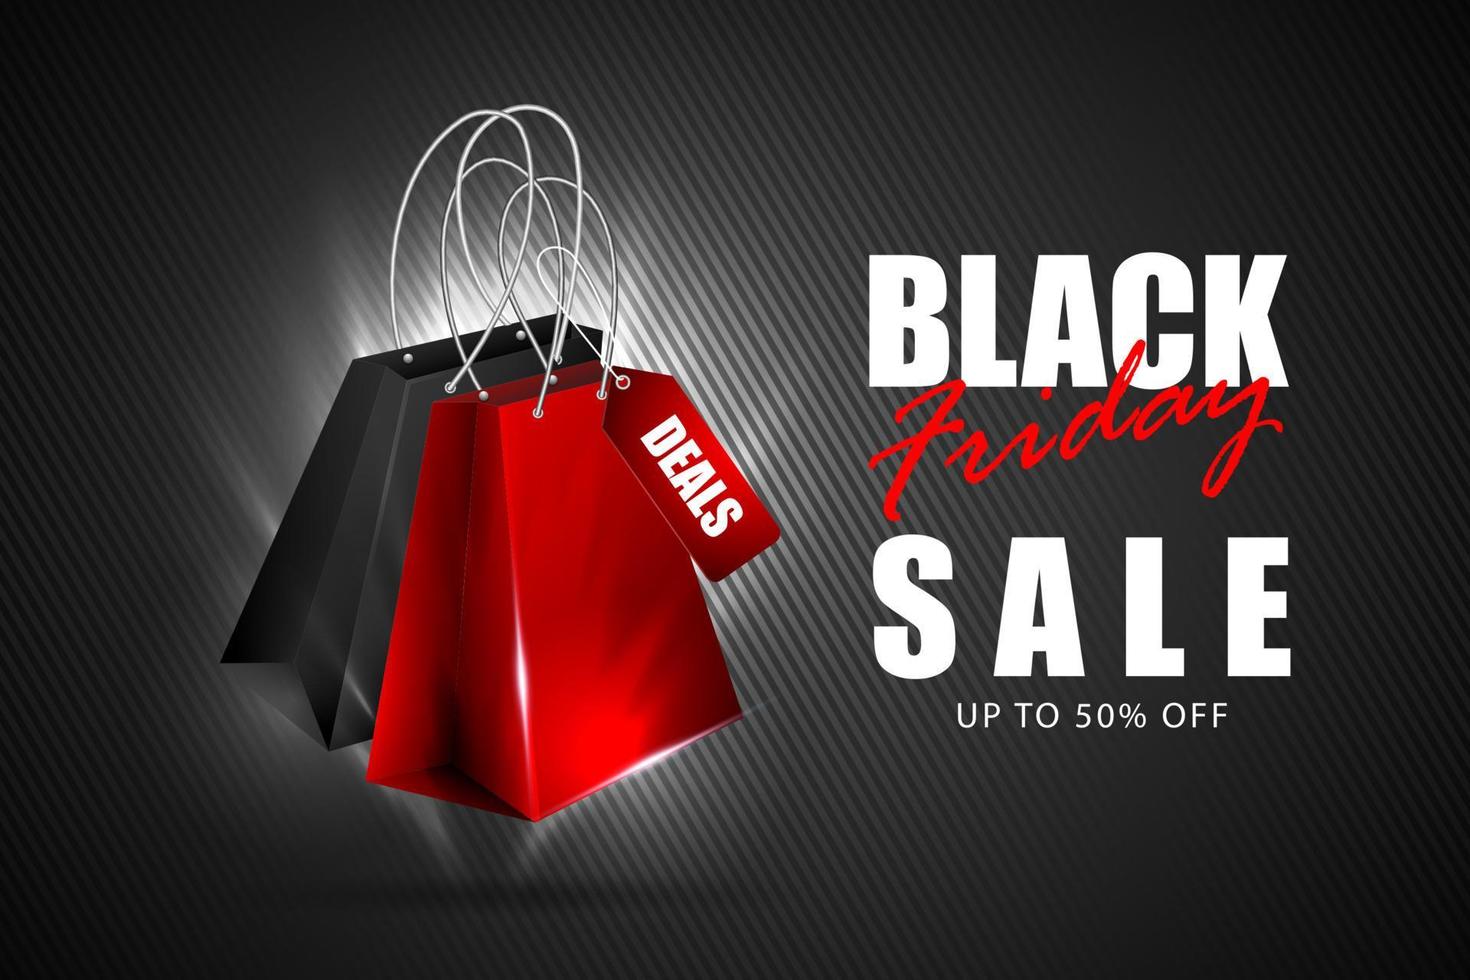 black friday super sale, banner sale , black friday background vector